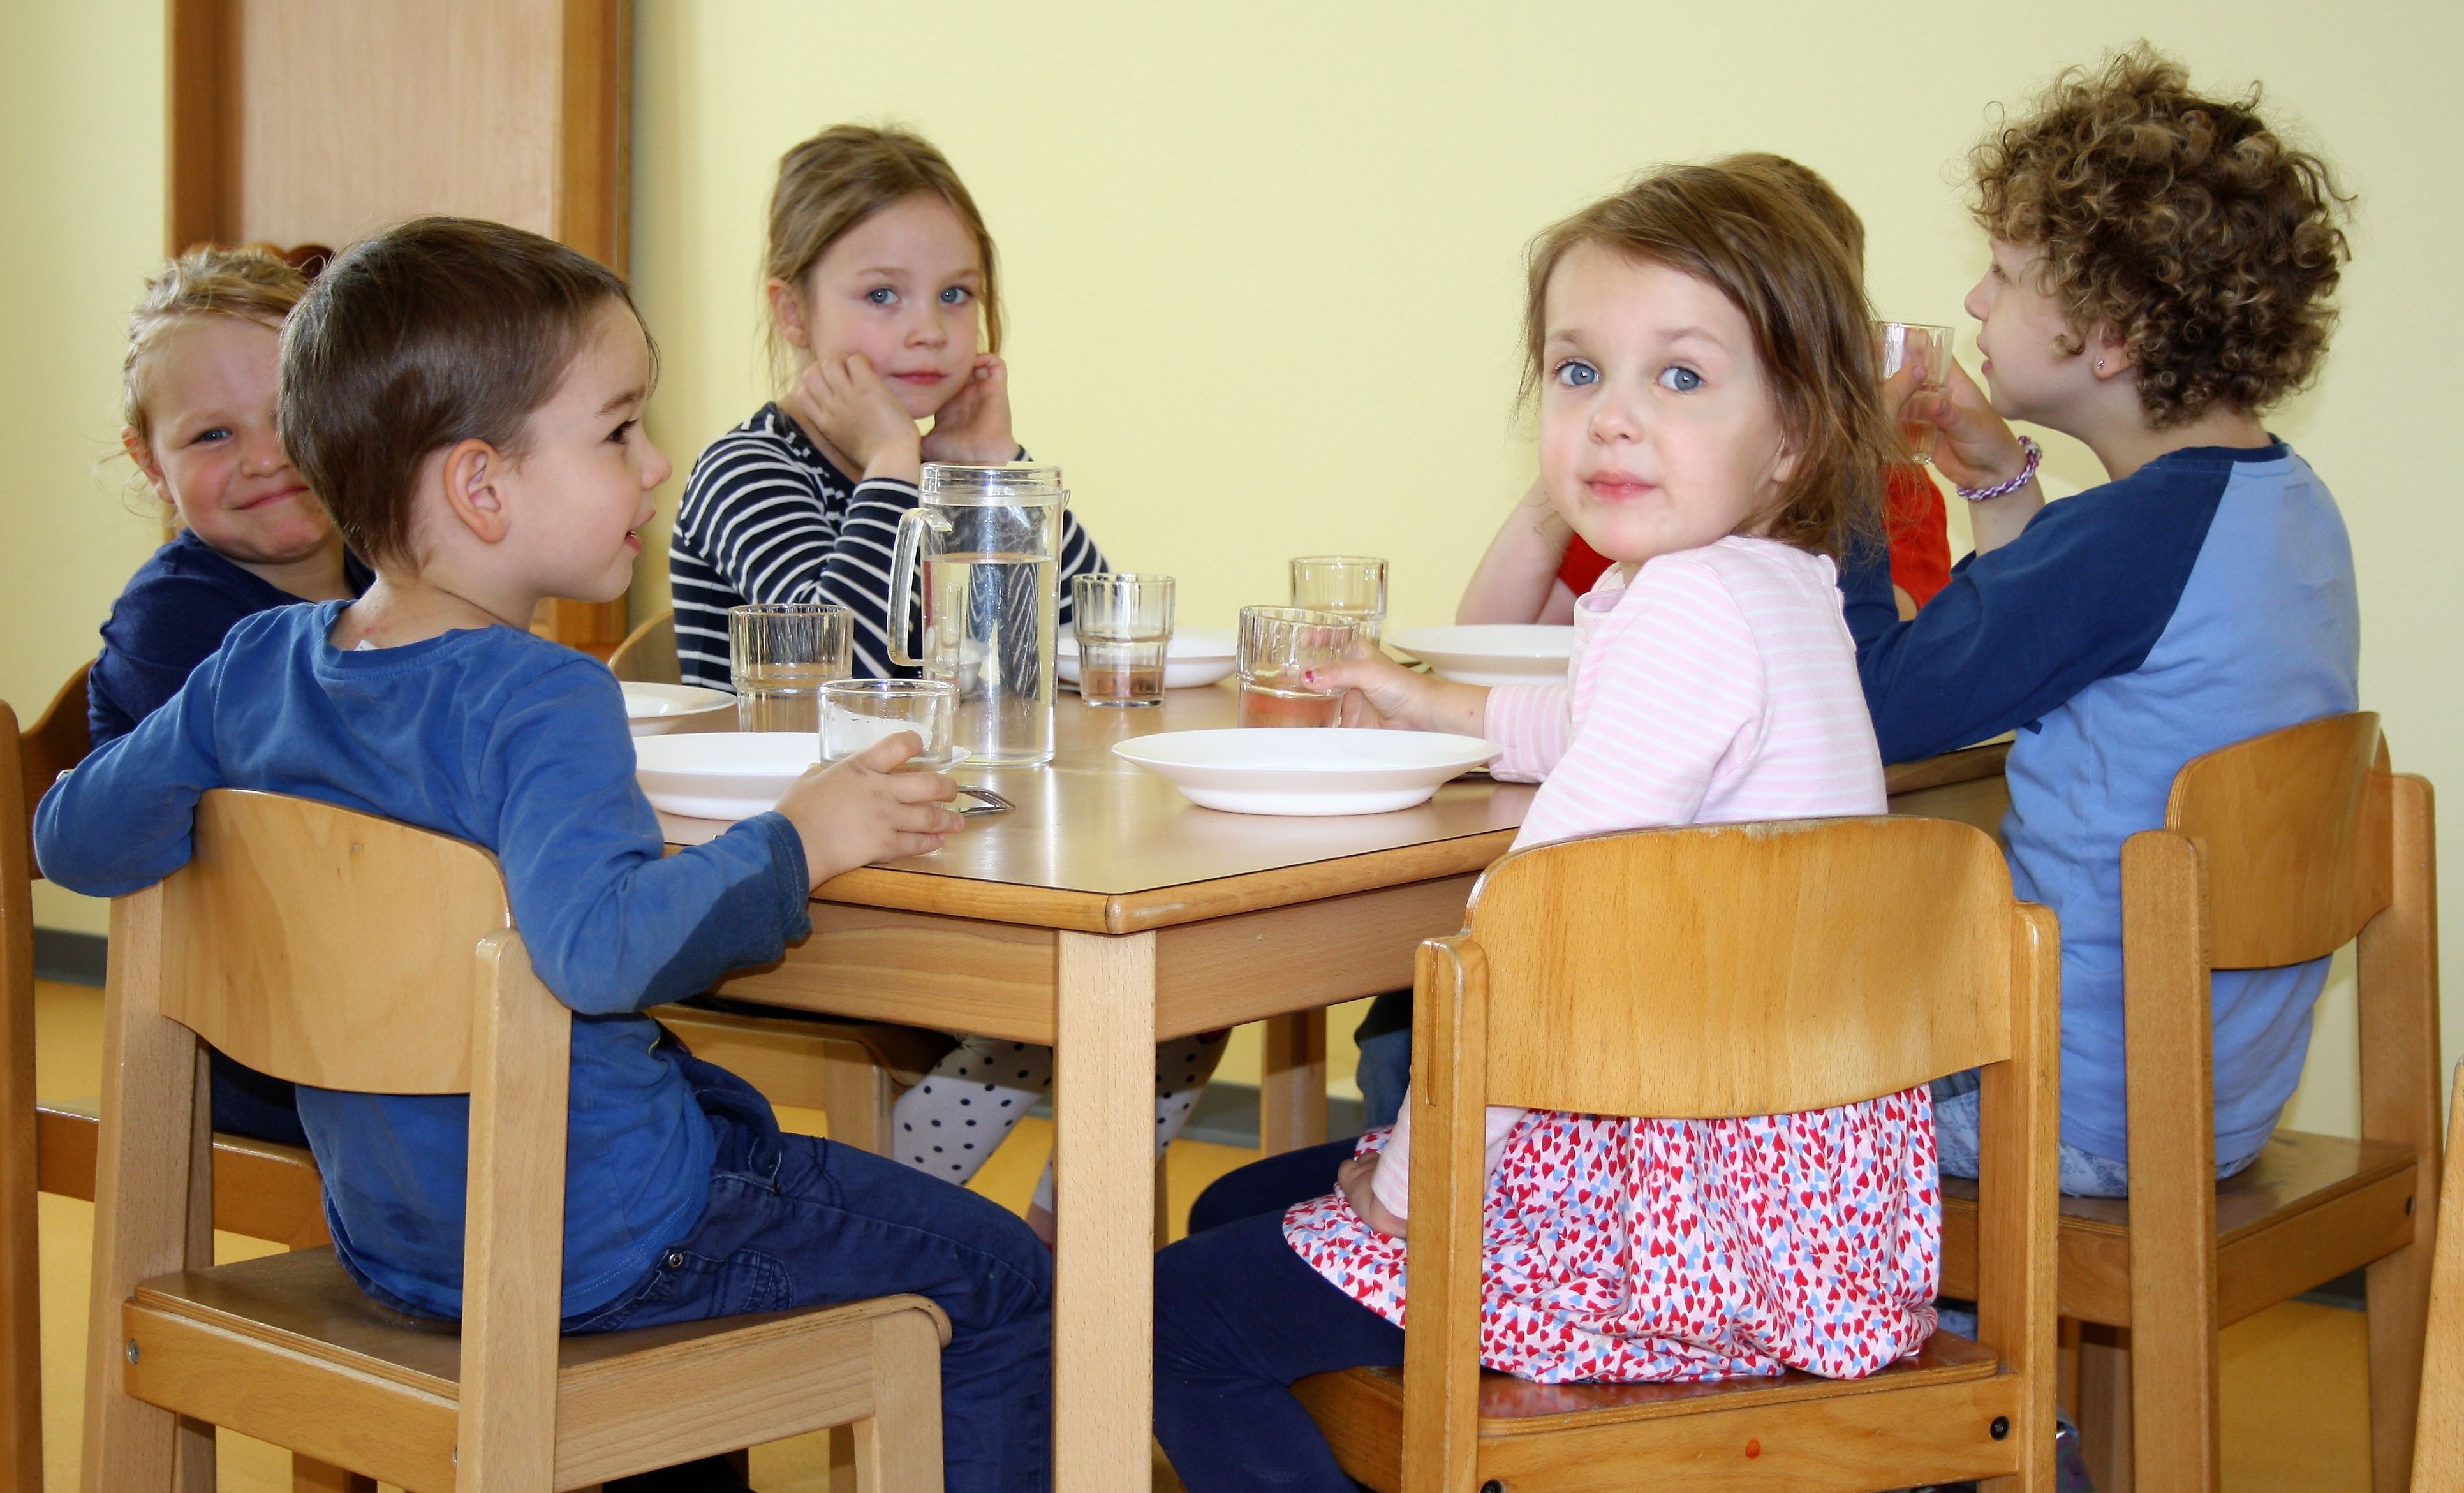 Foto: Kinder beim gemeinsamen Mittagessen im Kinder-Café